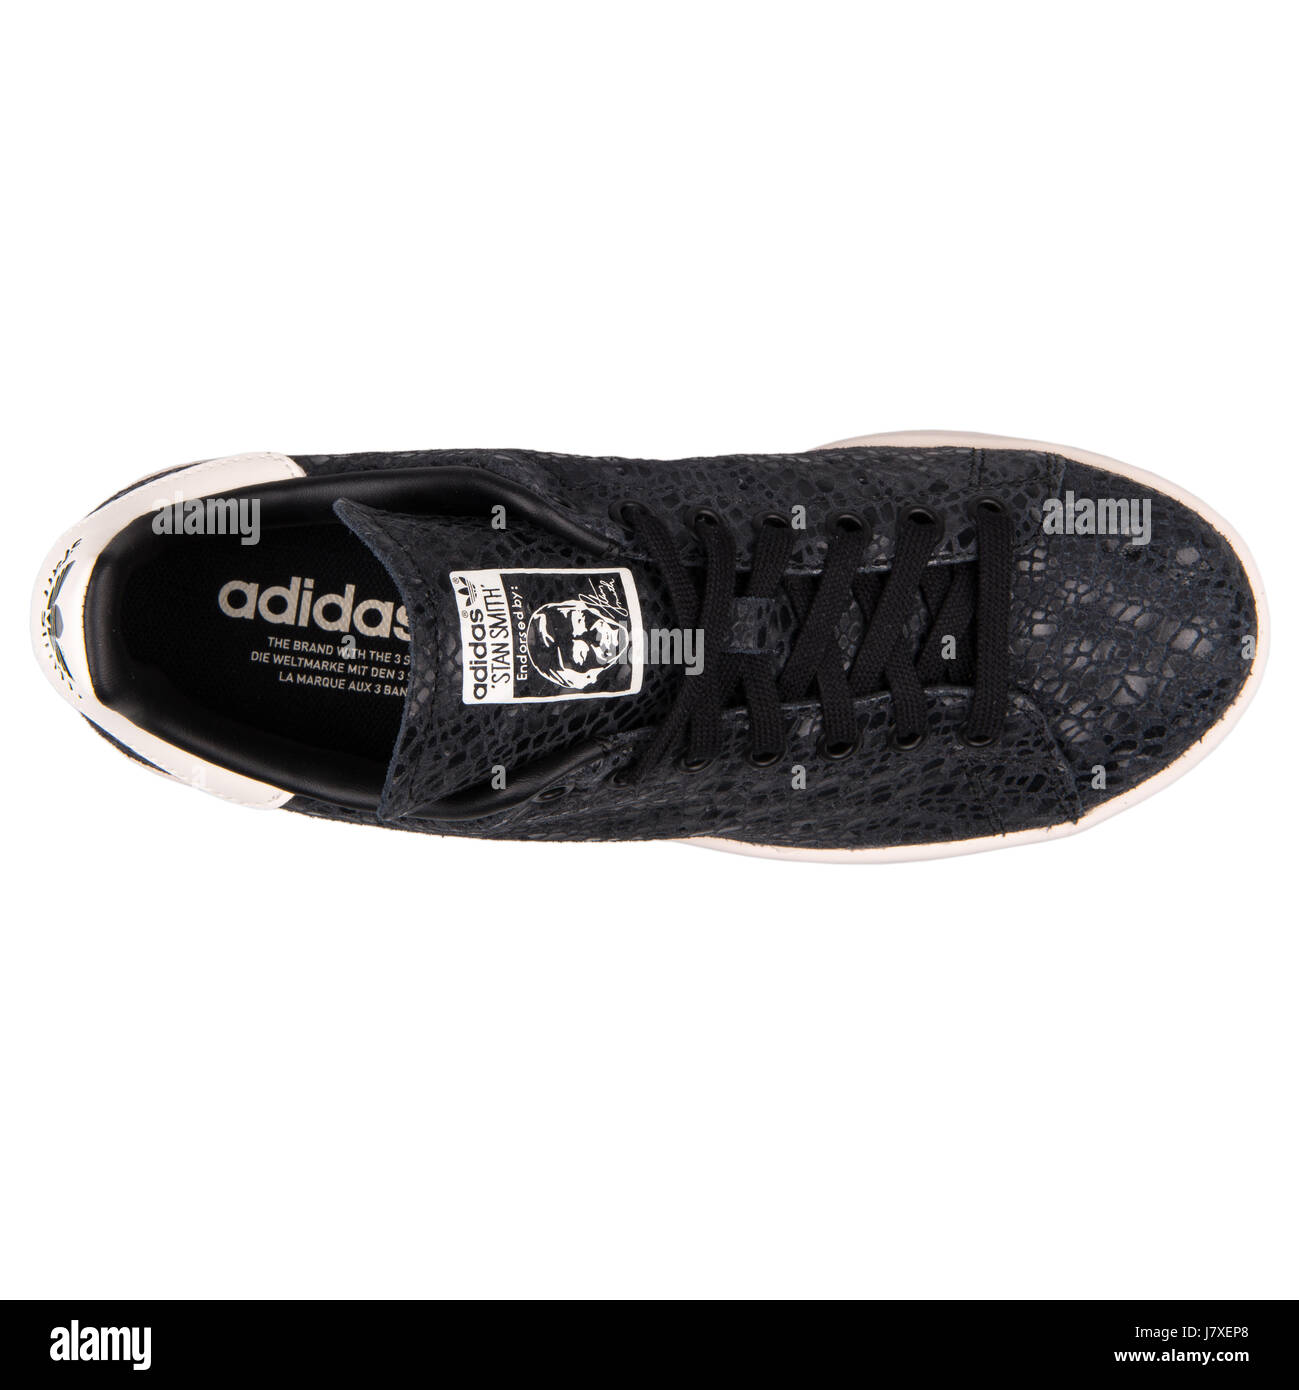 Adidas Stan Smith W Mujer Sneakers Negro - S77344 Fotografía de stock -